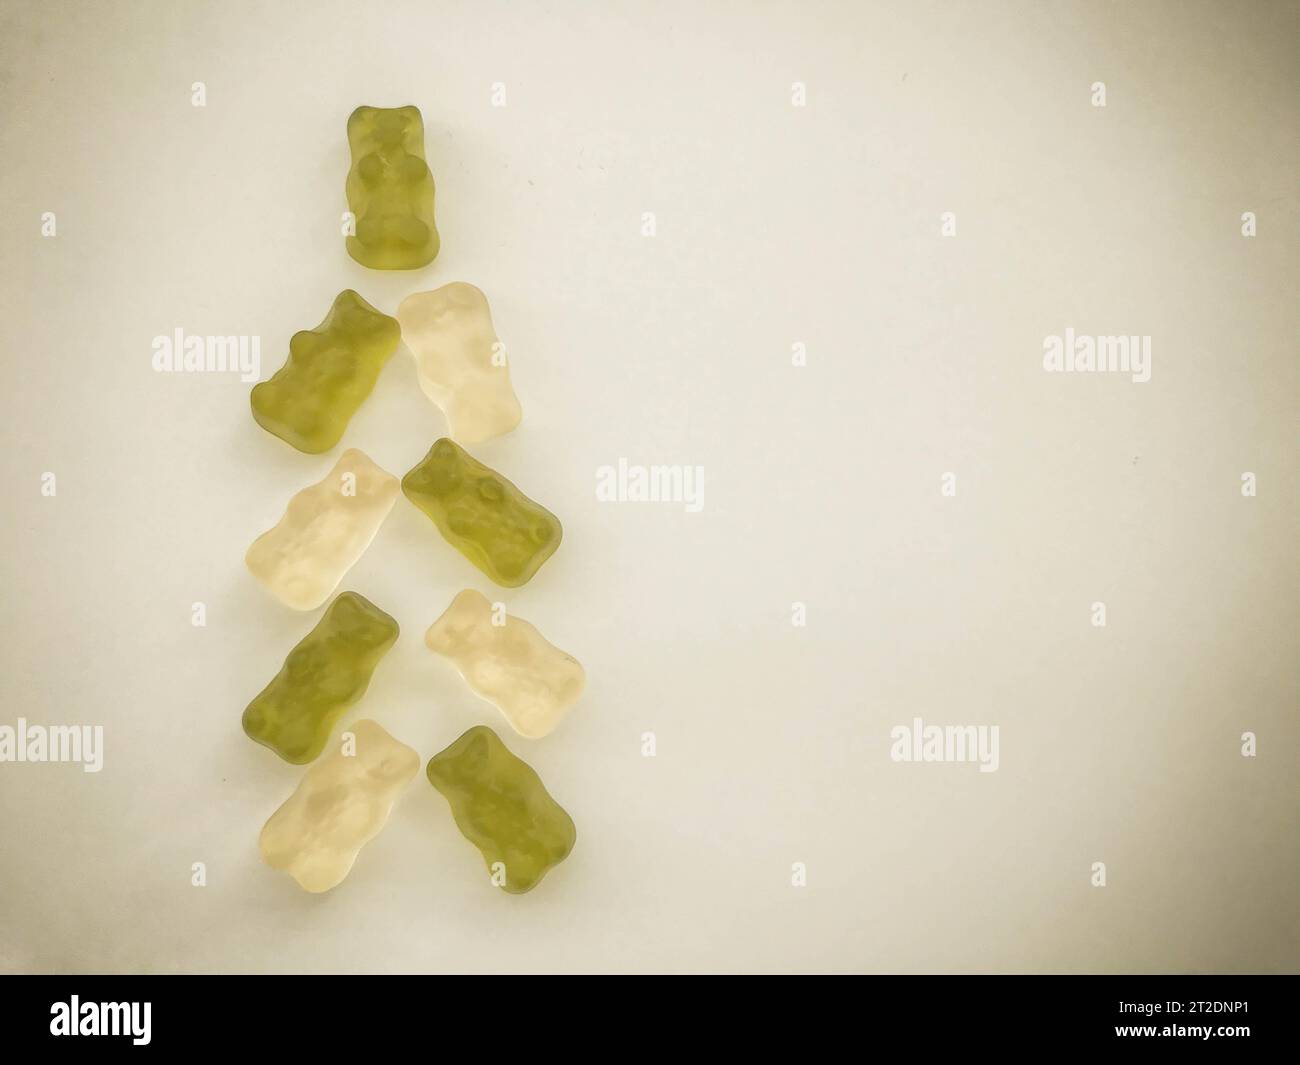 albero fatto di caramelle gommose. Albero di Natale fatto di orsi gelatinici bianchi e verdi. marmellata, dolce e delizioso dessert. gelatina di frutta. Foto Stock